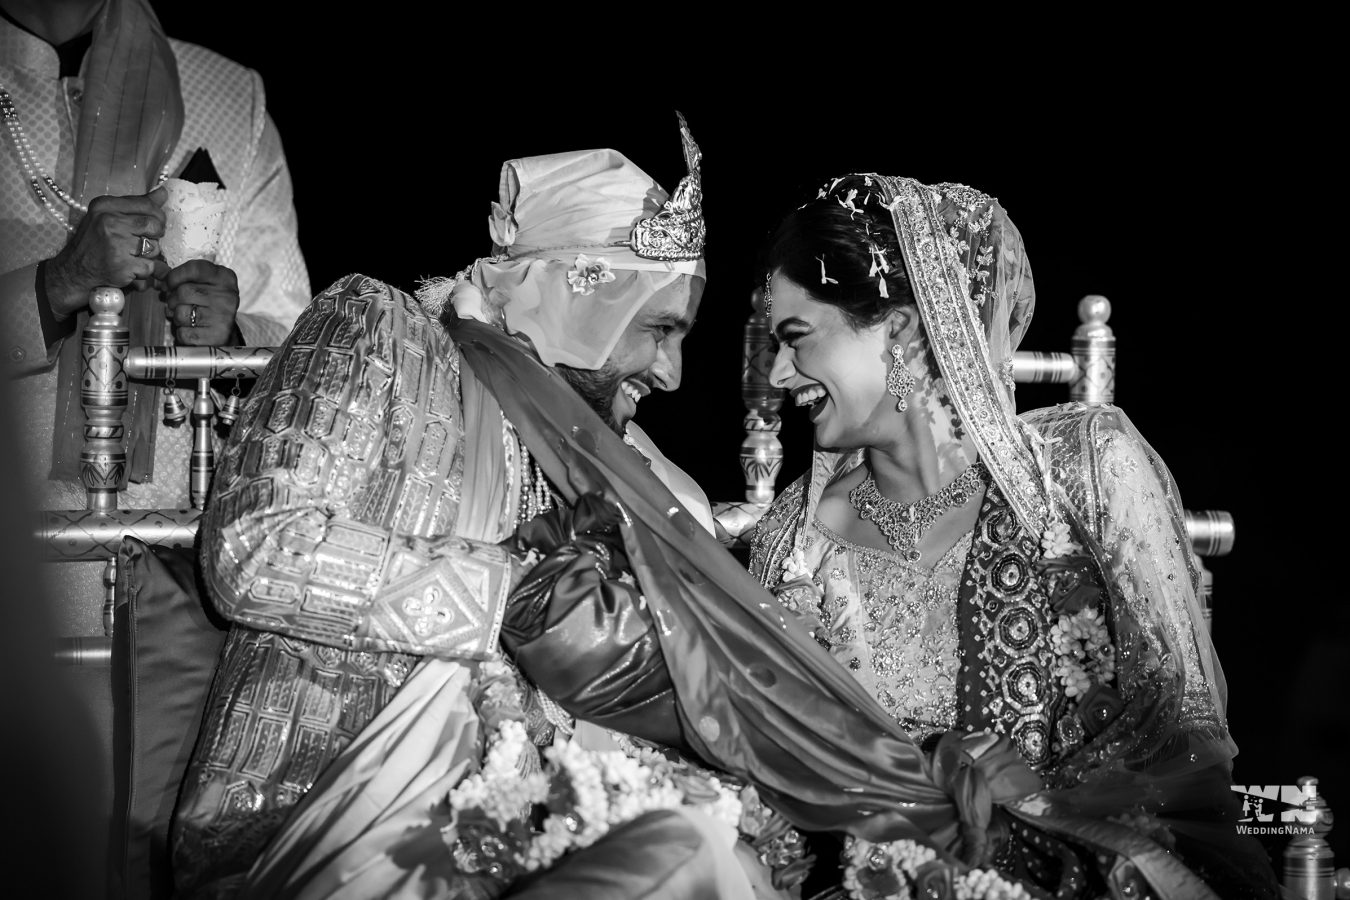 Vegan bride Simran Gandhi Shivlani with her husband on their wedding day